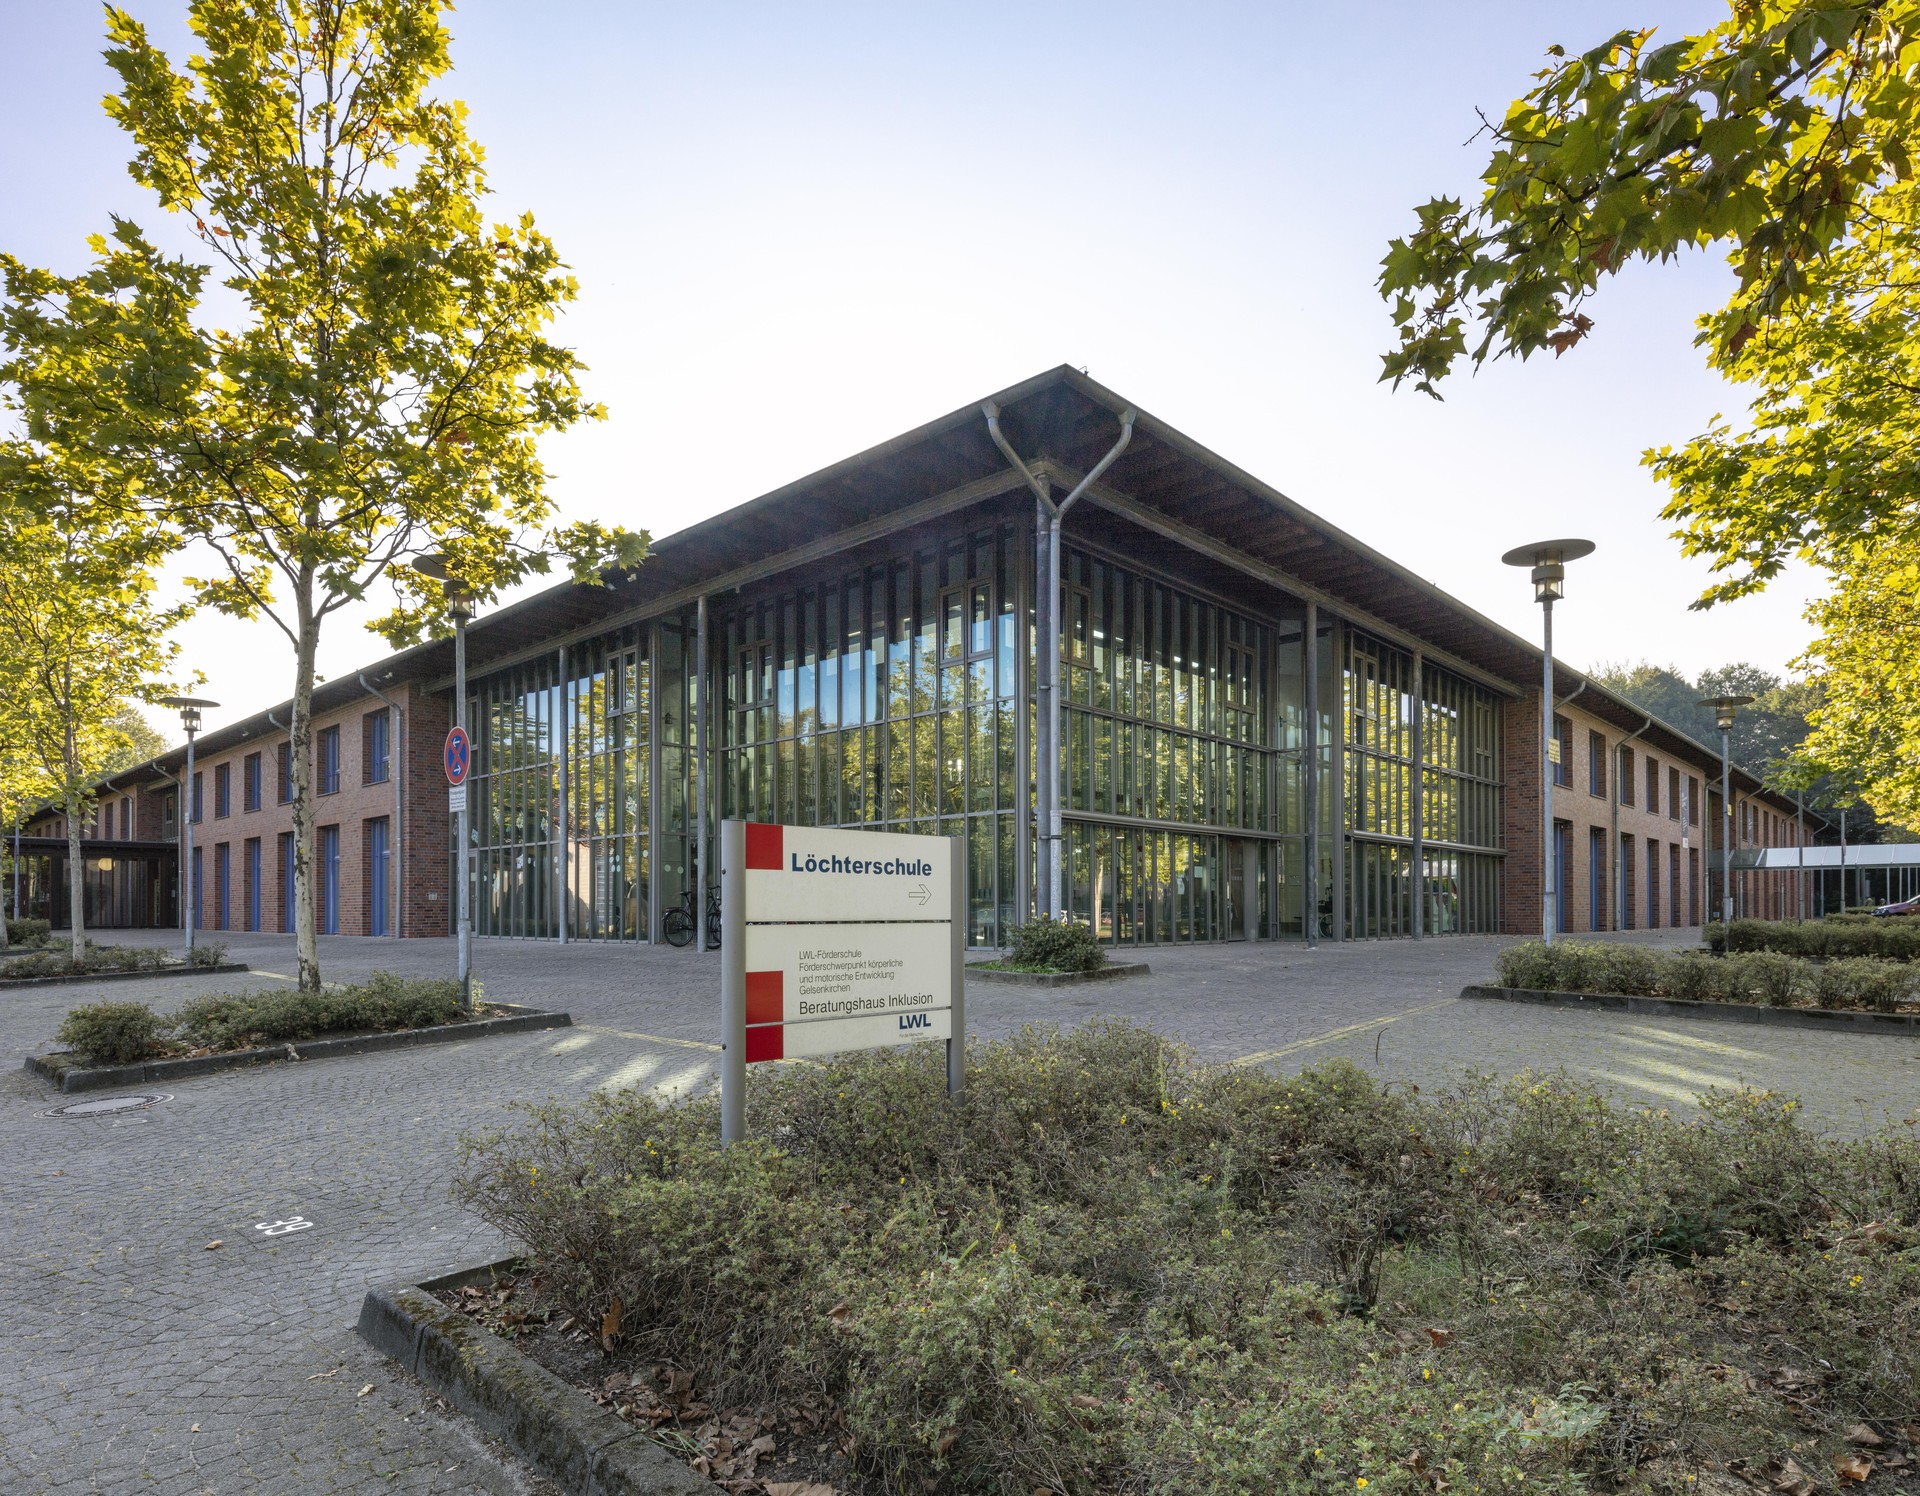 Gelsenkirchen, Löchterschule, Ansicht des Schulgebäudes mit Glasfassade im vorderen Teil.
Bild: PODEHL Fotodesign